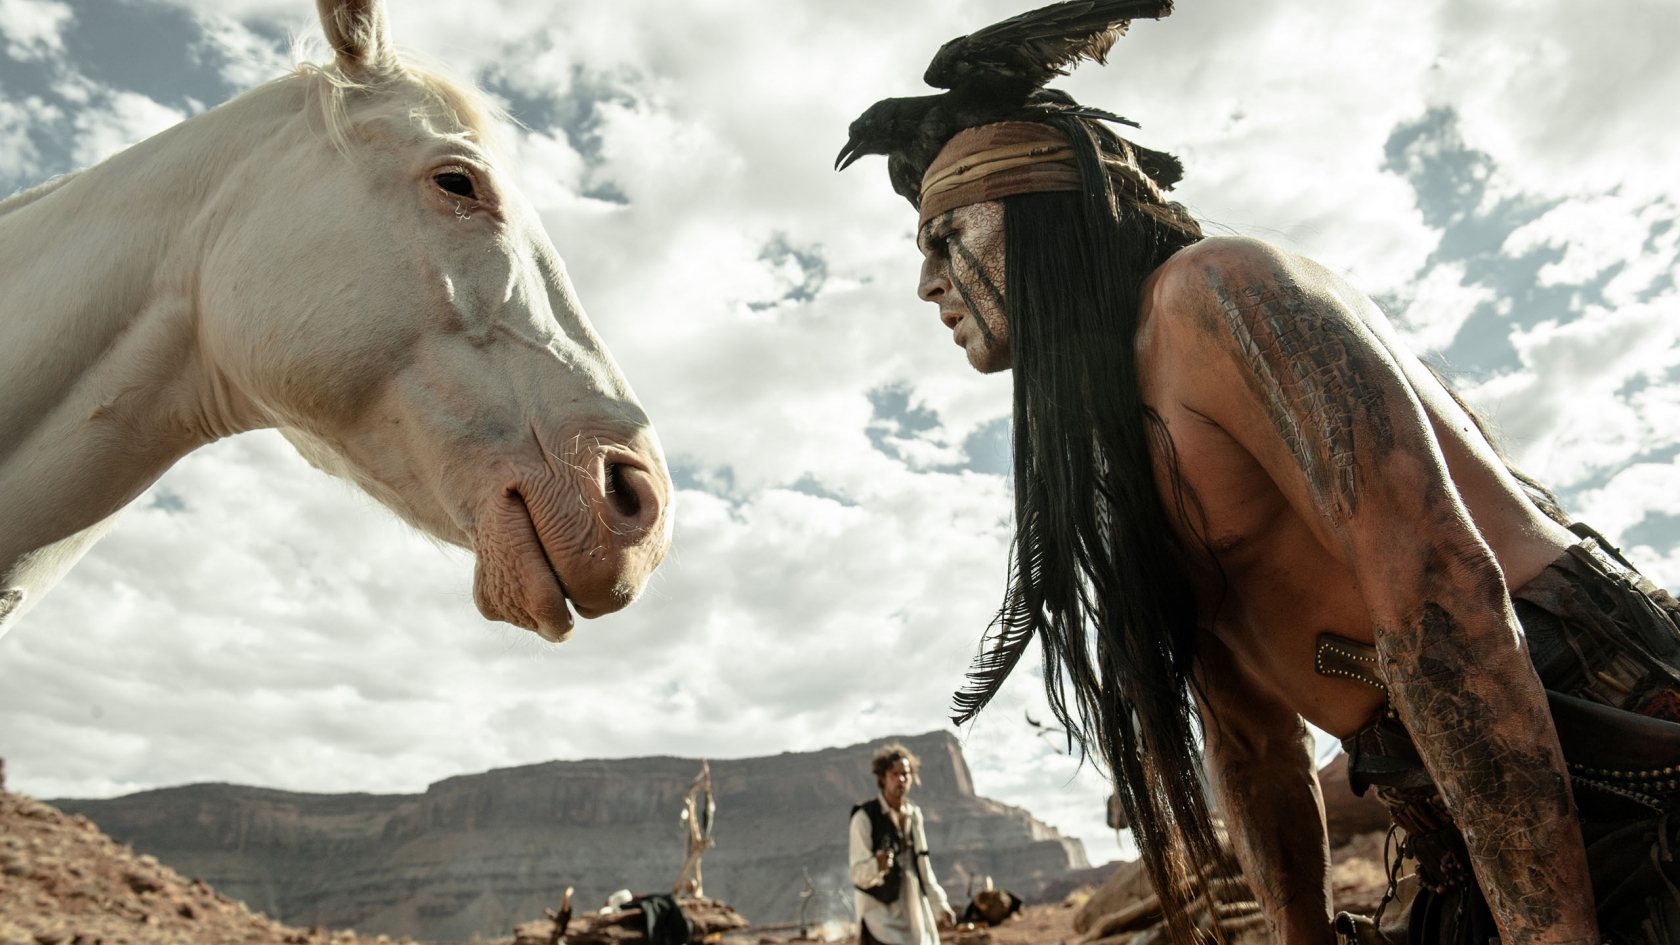 2013 The Lone Ranger Scene for 1680 x 945 HDTV resolution